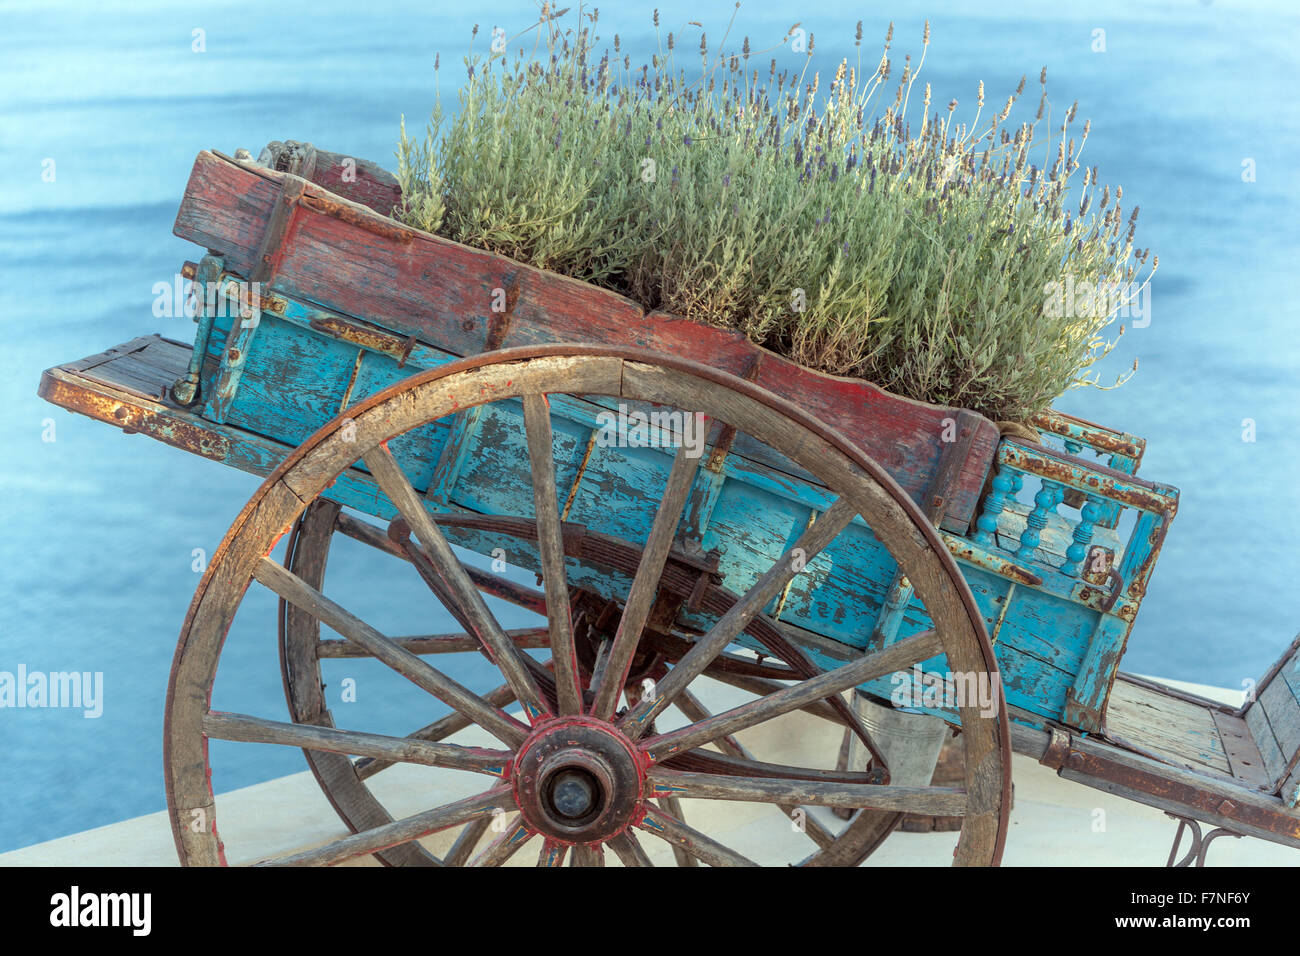 Lavande bien-être, croissant dans un vieux chariot décoratif Oia Santorini Cyclades Grèce Îles grecques chariot en bois sur le toit au-dessus de la mer chariot à roue en bois Banque D'Images